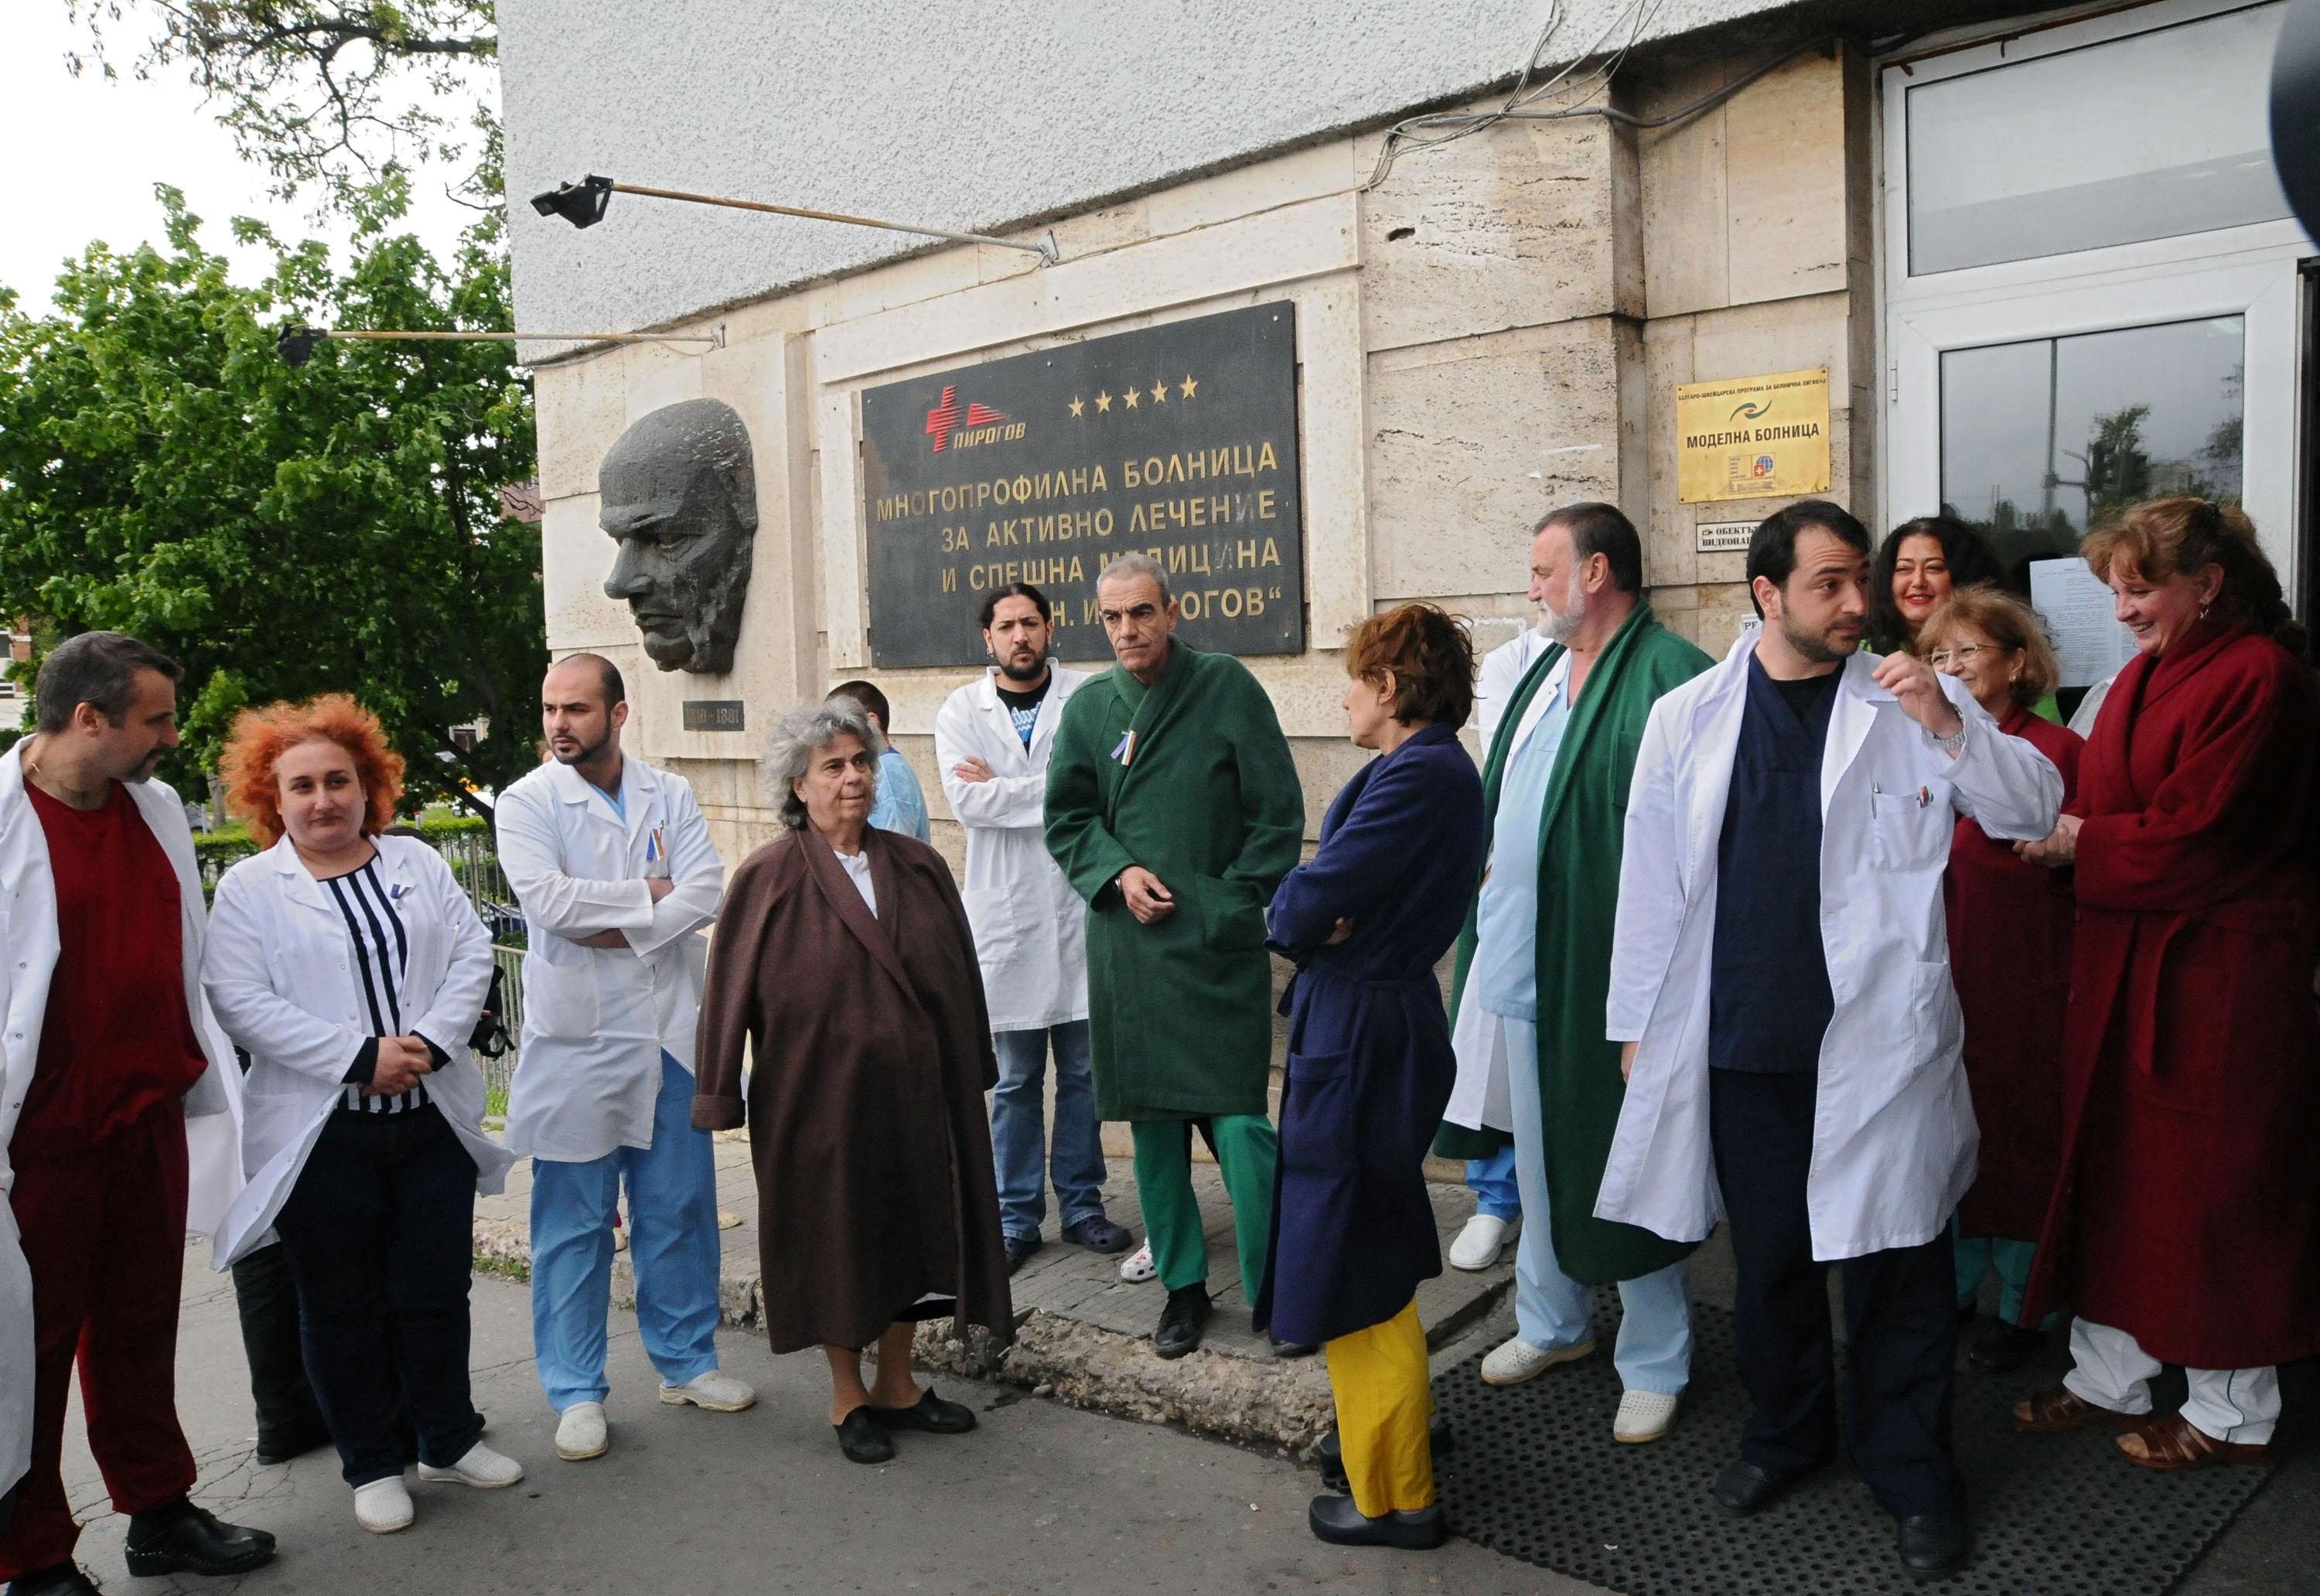 Медиците от ”Пирогов” ще протестират пред болницата в 13 часа